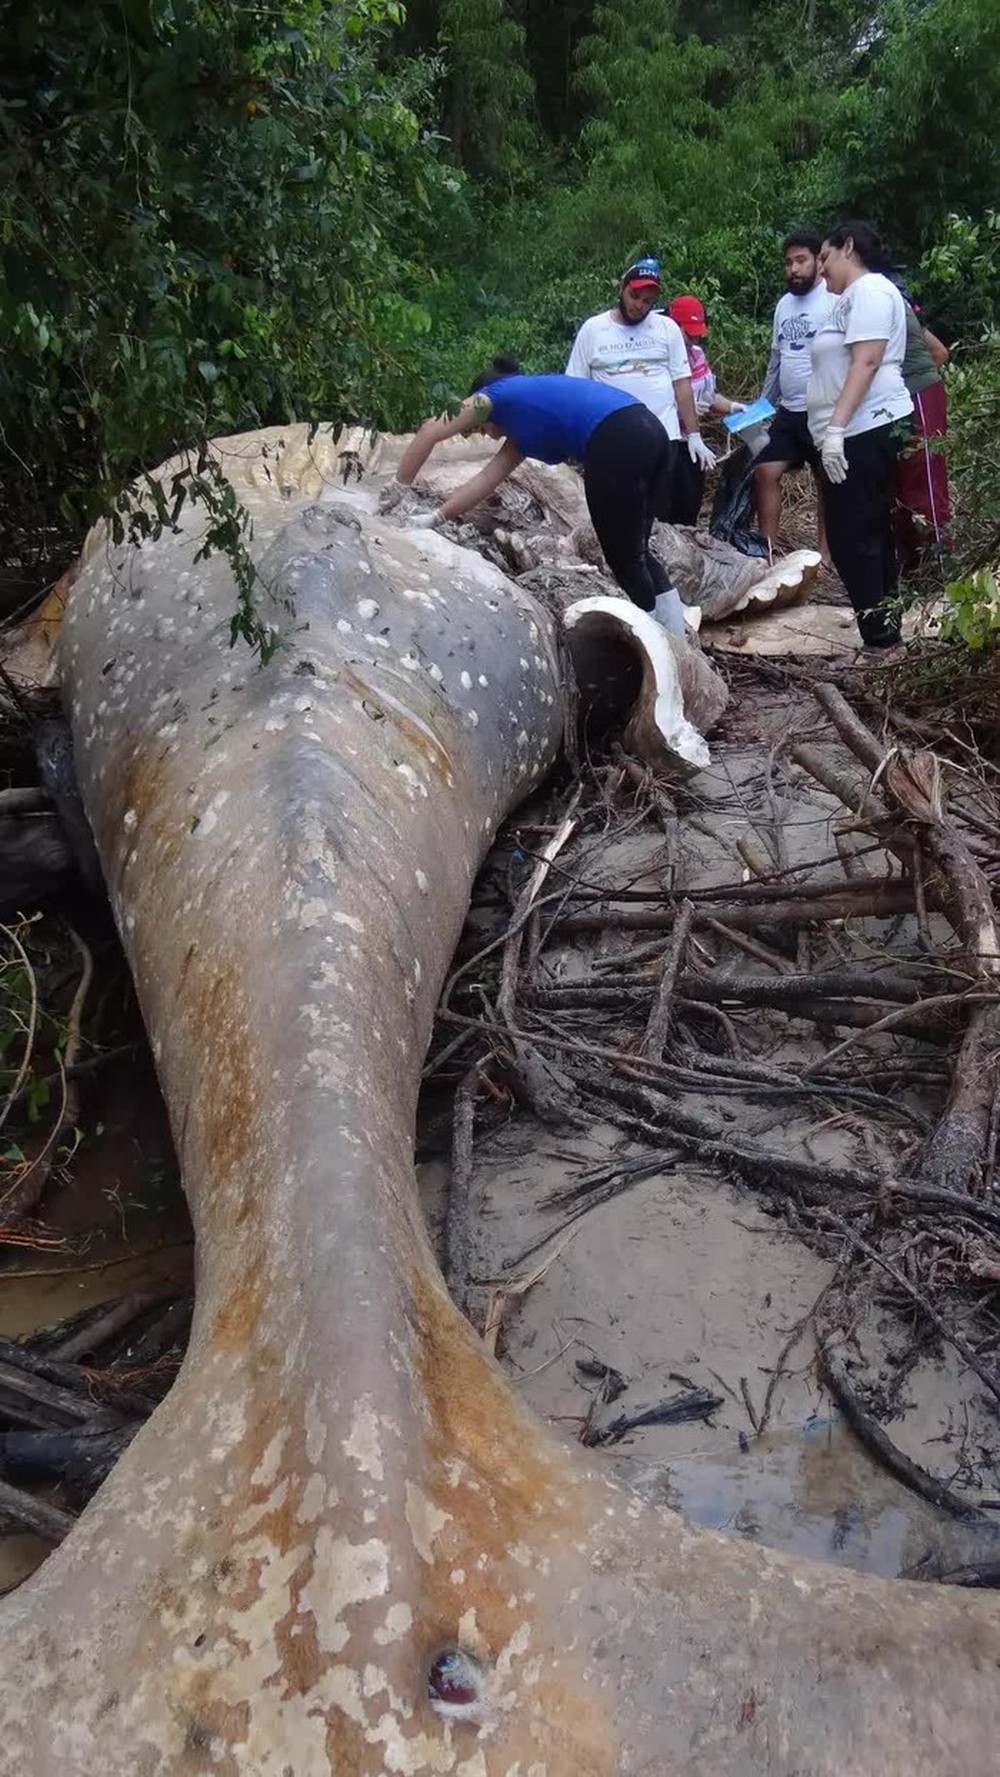 Bí ẩn về thi thể cá voi nằm giữa rừng Amazon khiến các nhà khoa học phải đi tìm câu trả lời - Ảnh 3.